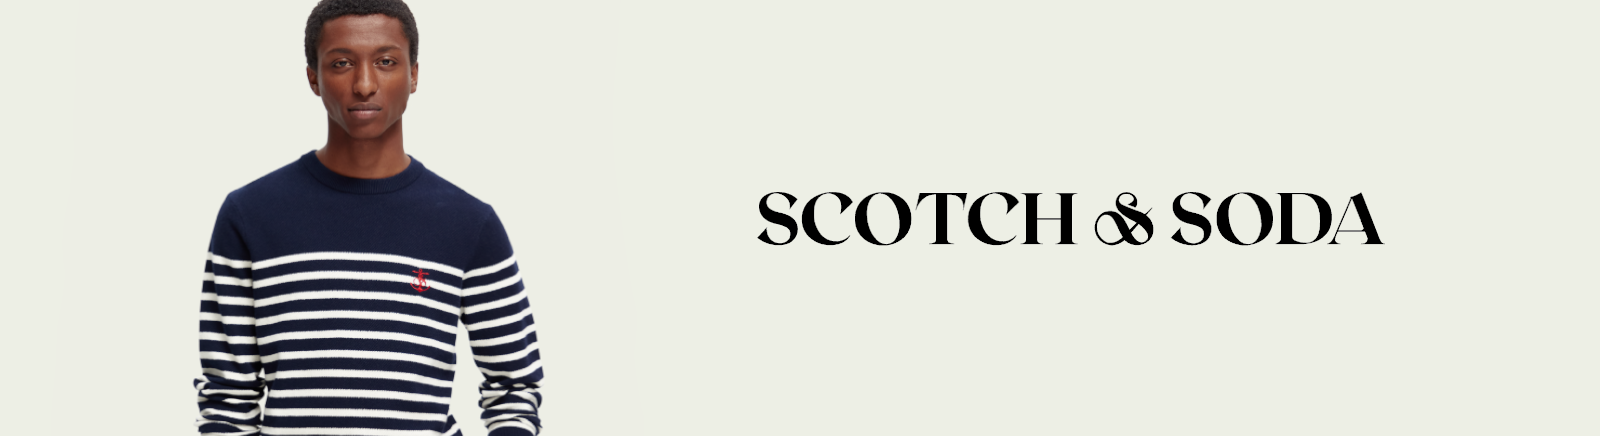 Scotch & Soda Boots für Herren im Online-Shop von GISY kaufen